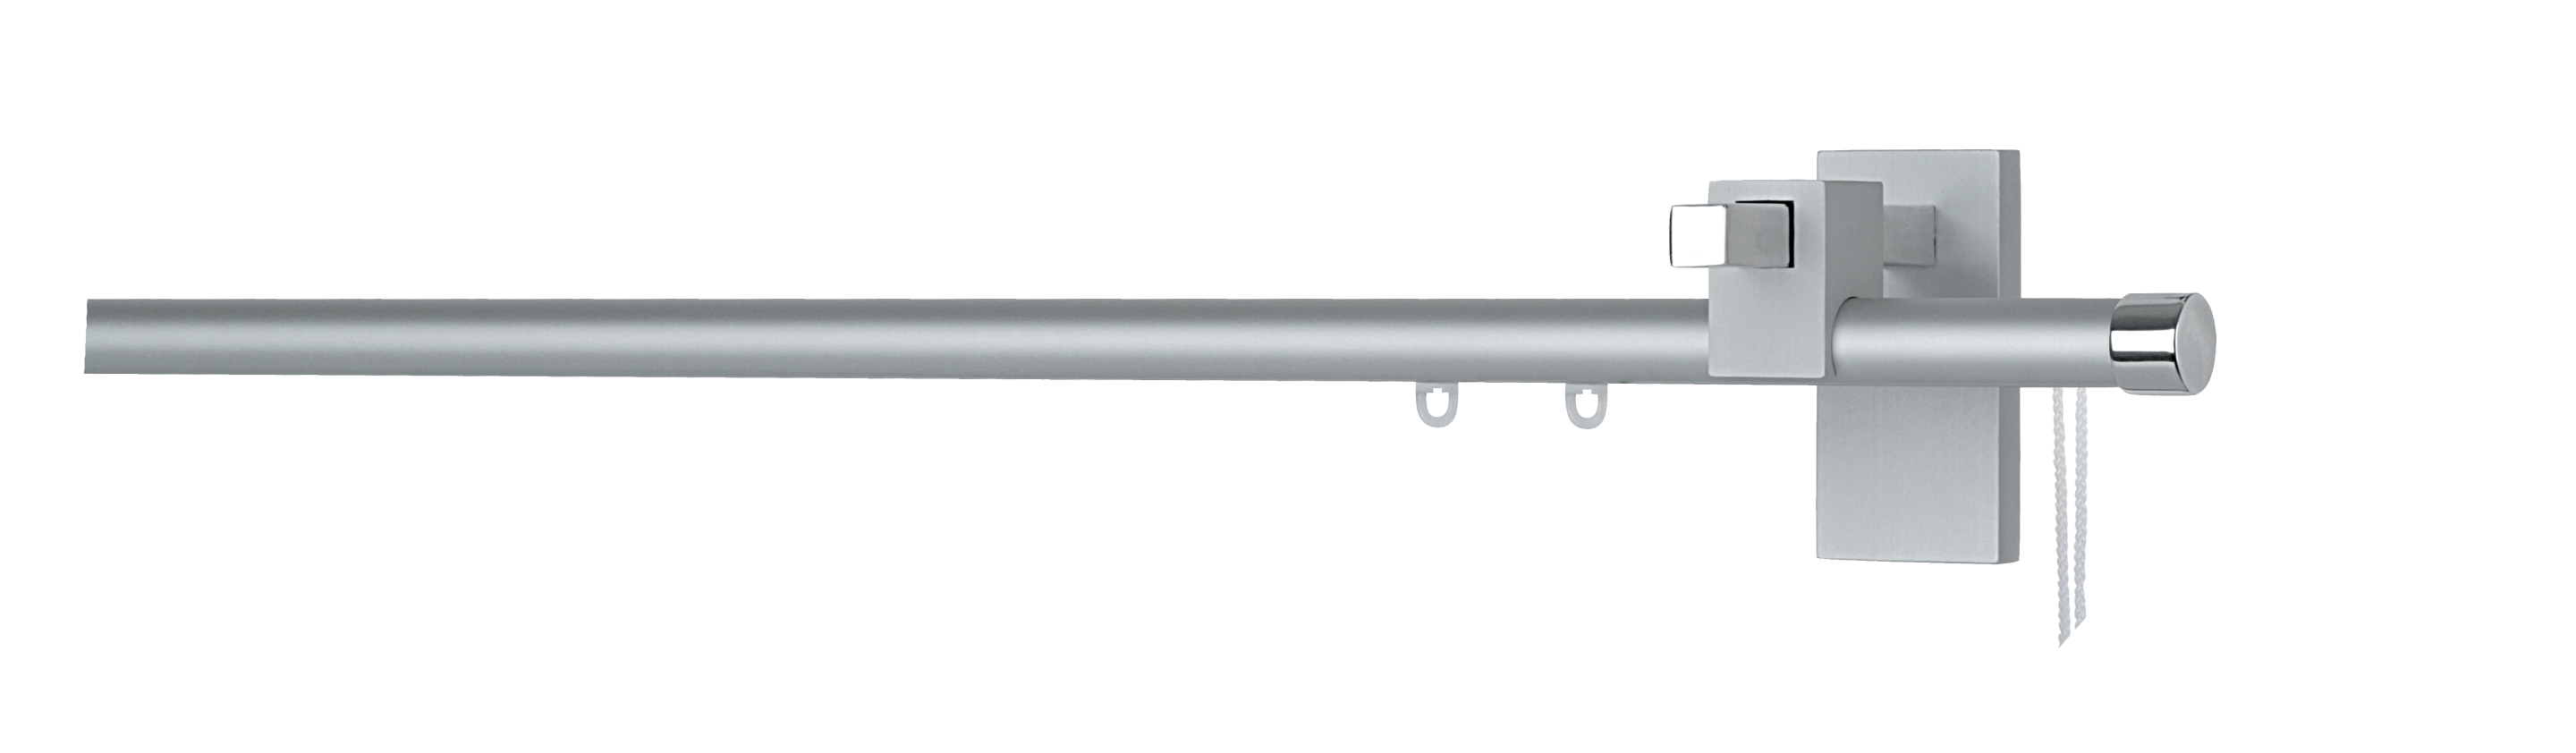 Frandoli Bastoni per Tende - Linea Casual Alluminio - Bastone Line tiro corda